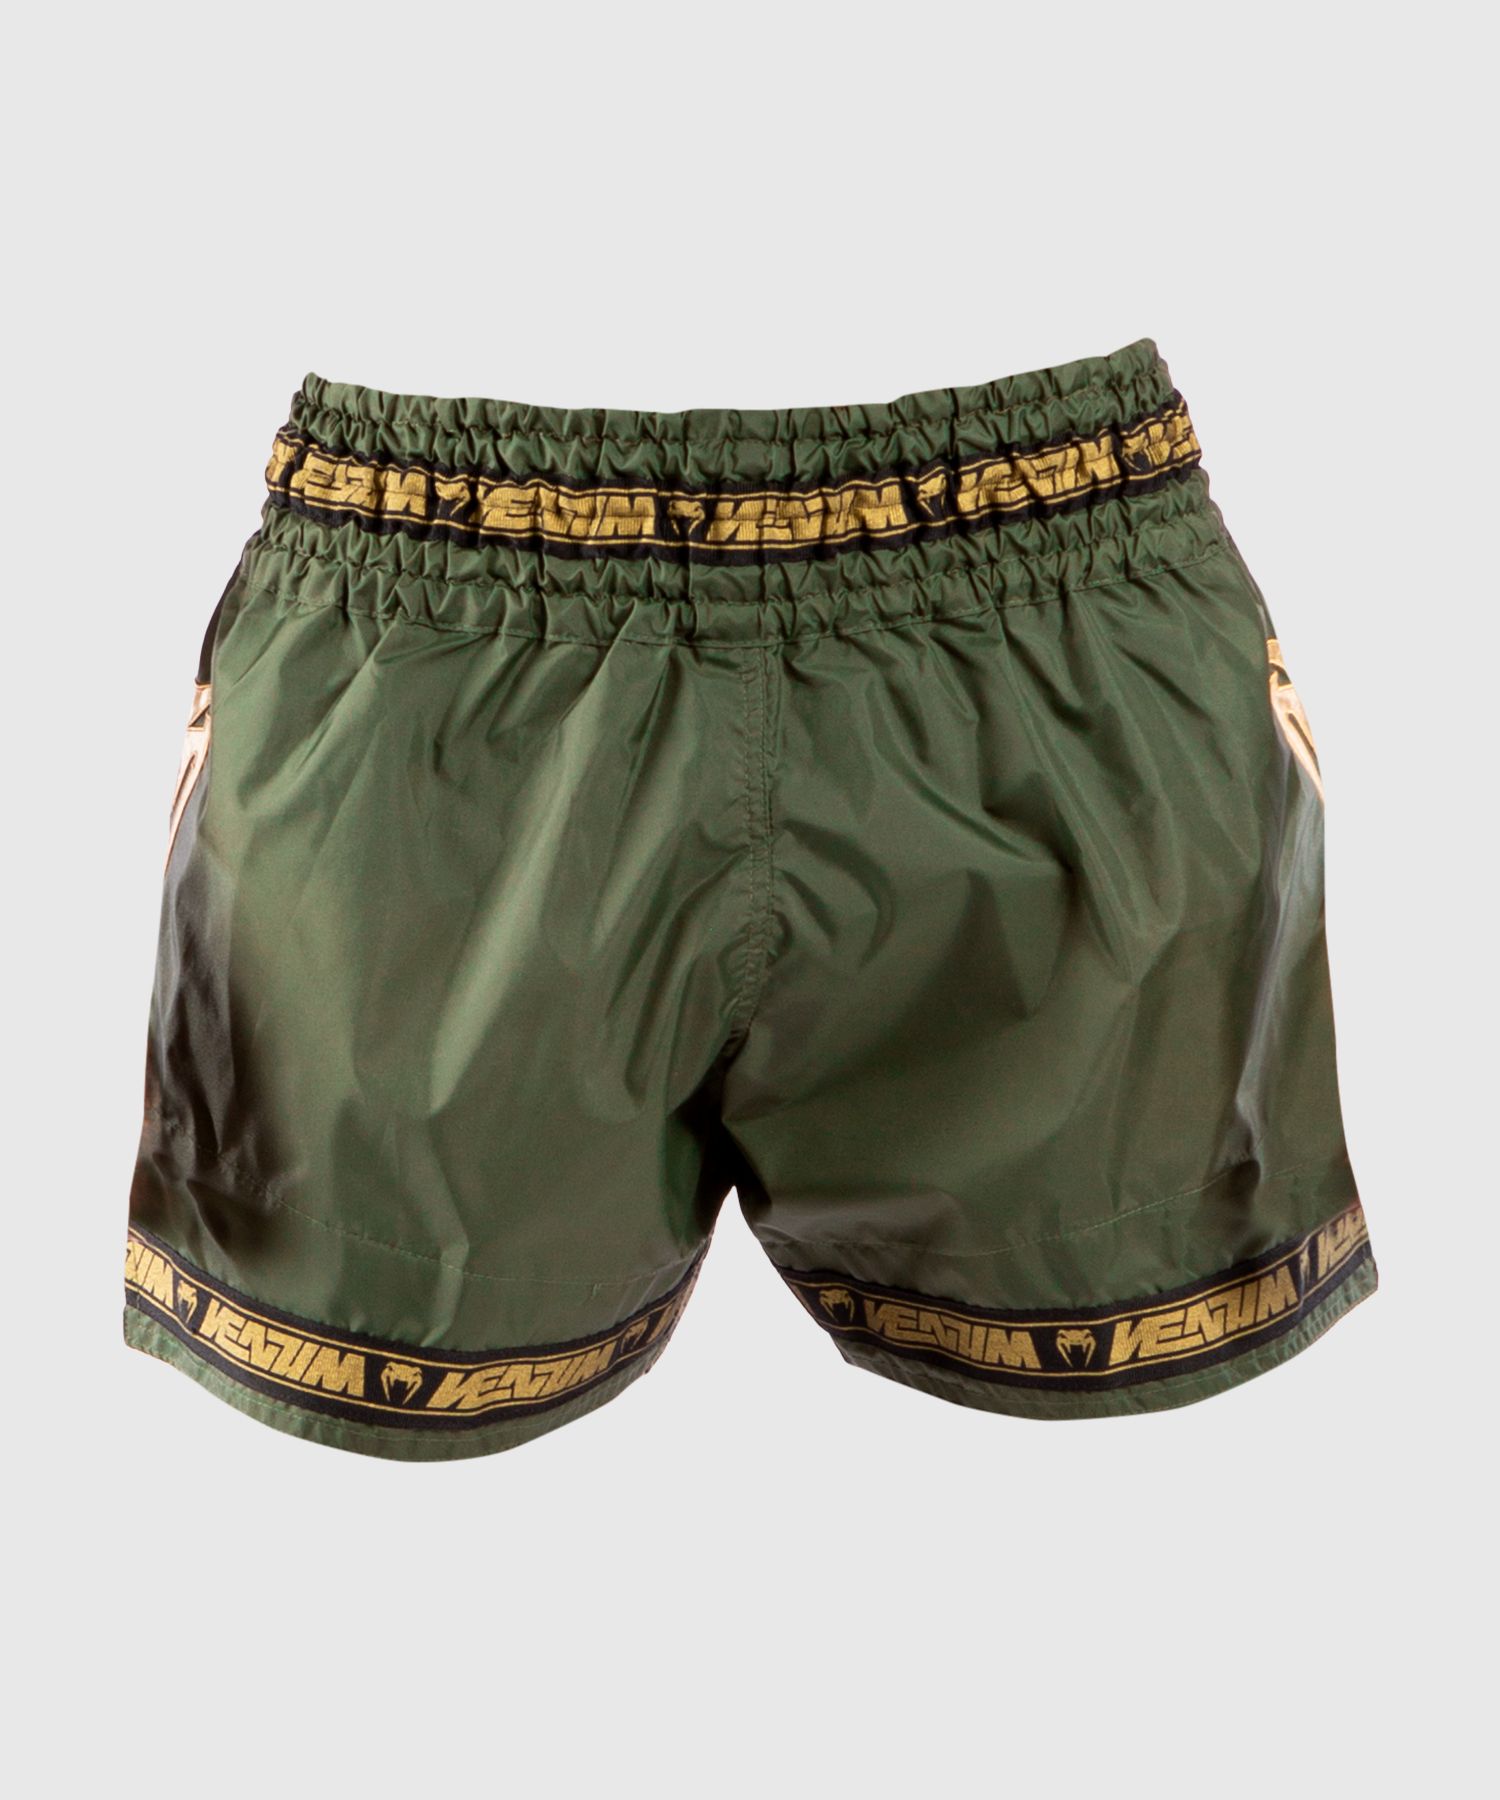 Venum Parachute Muay Thai Shorts - Khaki/Gold